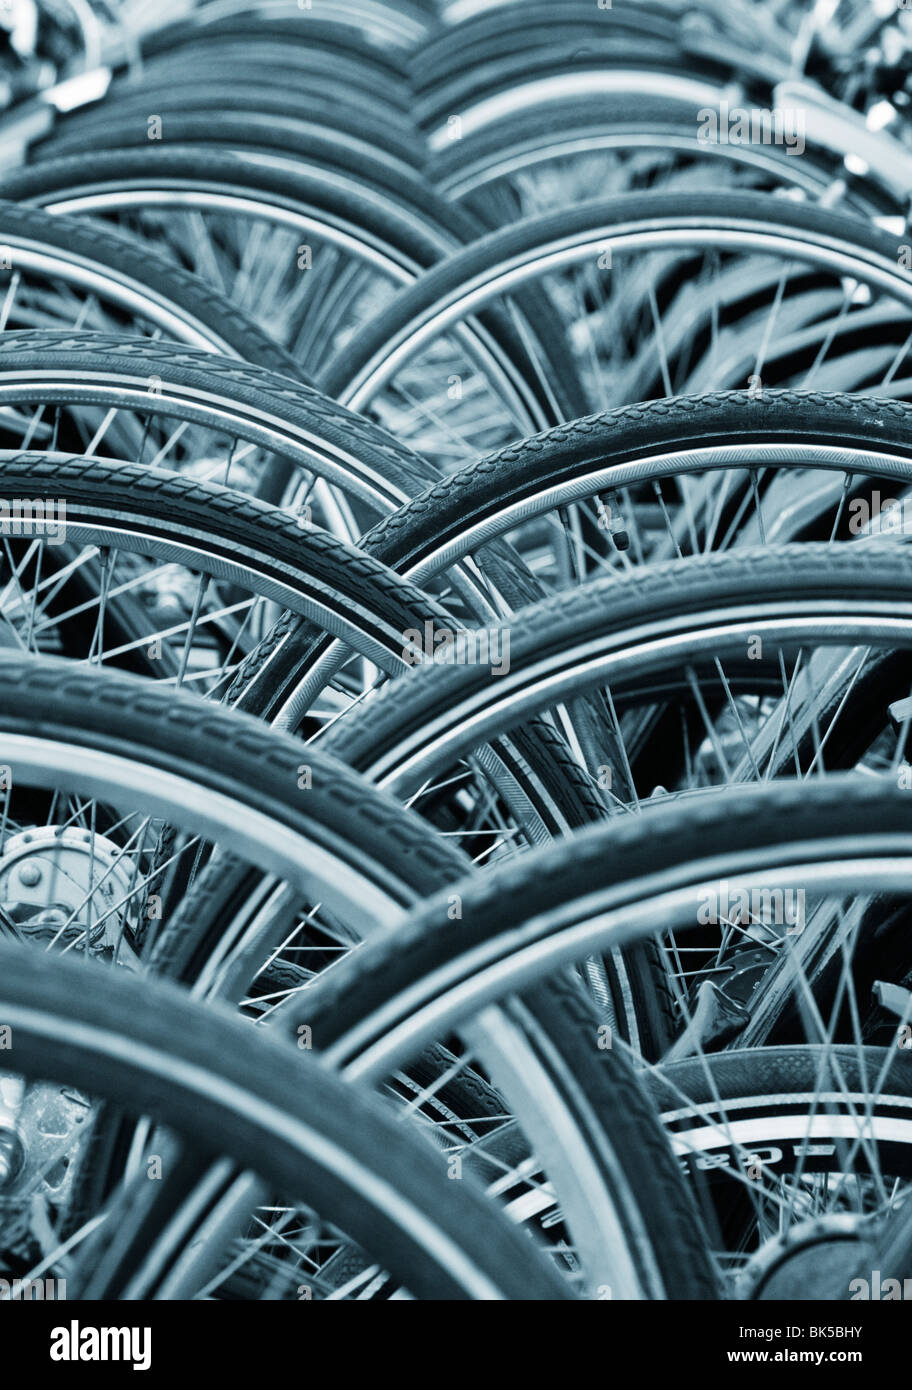 Image abstraite d'un grand nombre de roues de bicyclette dans les Pays-Bas Banque D'Images